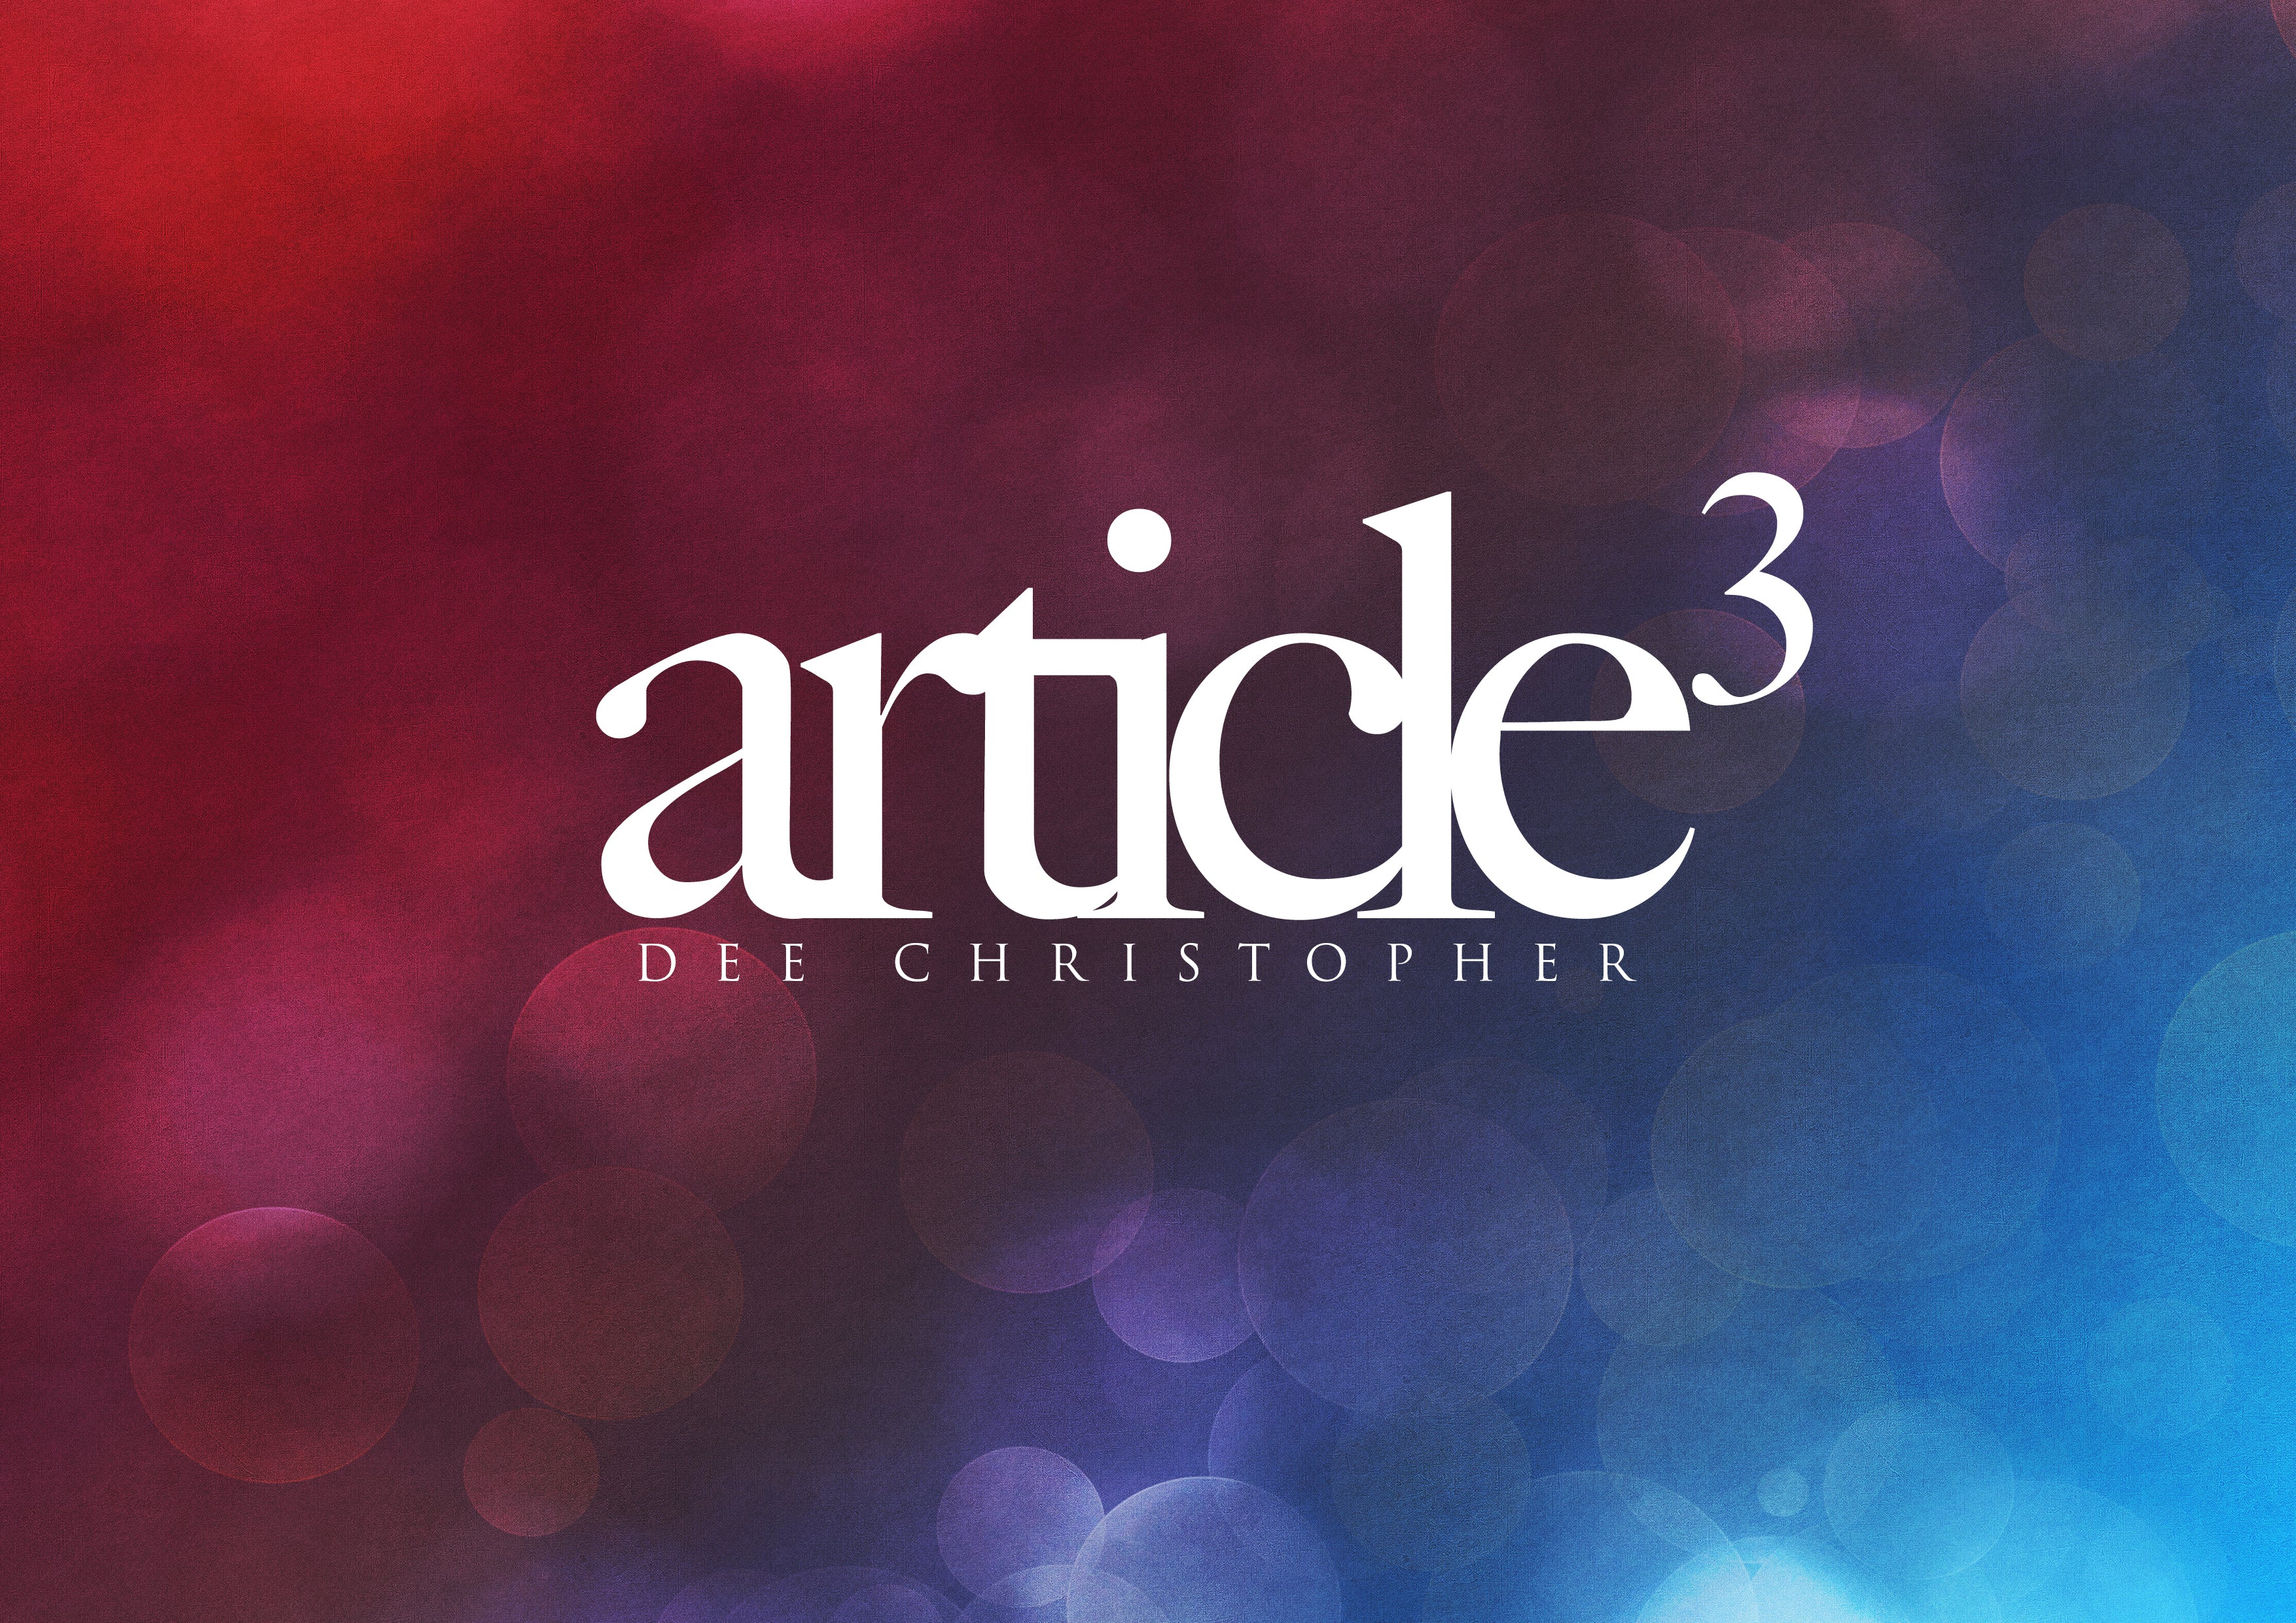 Article3 - Dee Christopher – DeeChristopher.Rocks